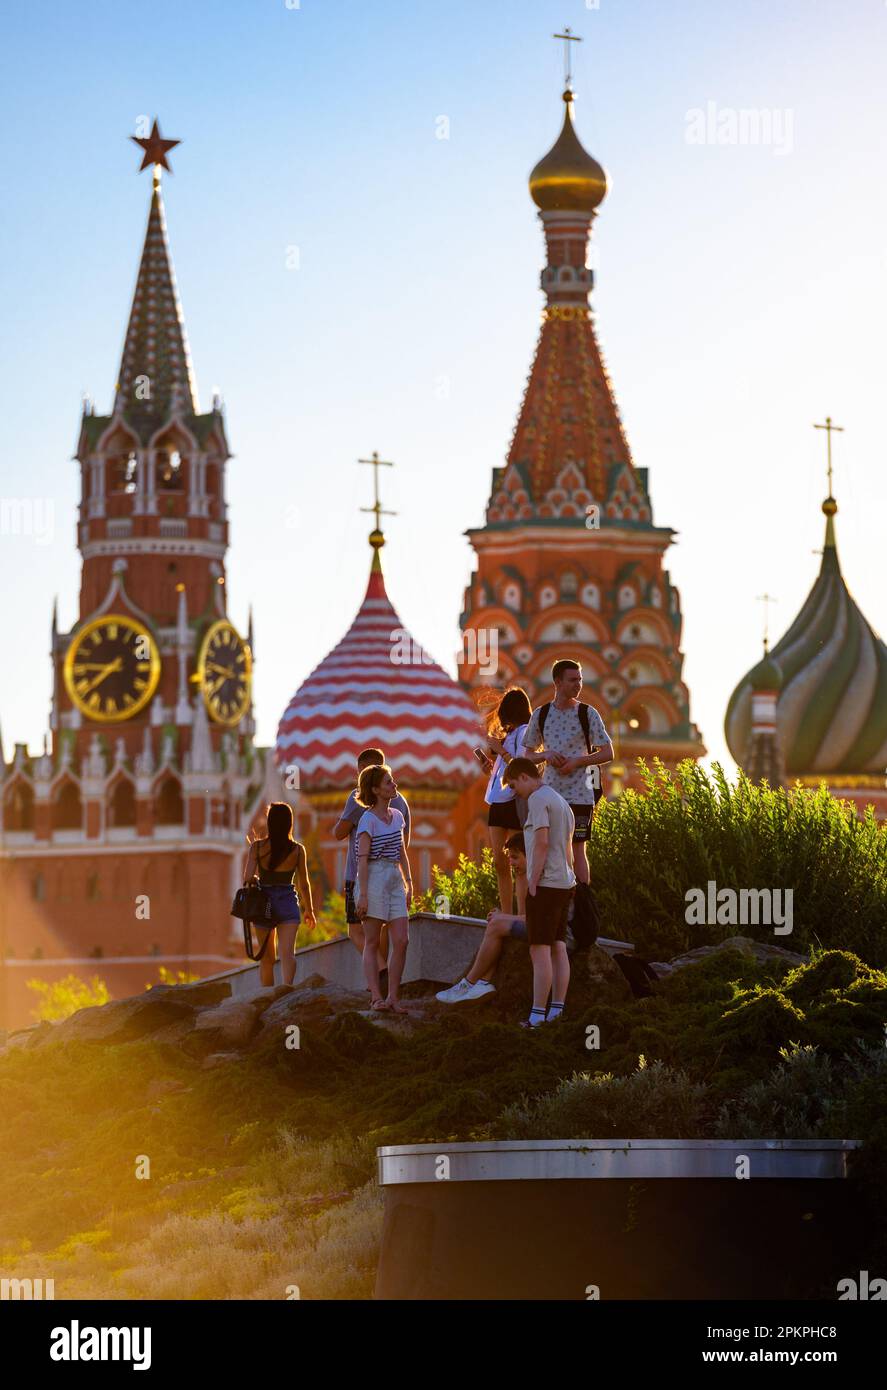 Les gens visitent le parc Zaryadye, Moscou, Russie. Cet endroit est une attraction touristique de la ville. Kremlin de Moscou et cathédrale Saint-Basile i Banque D'Images